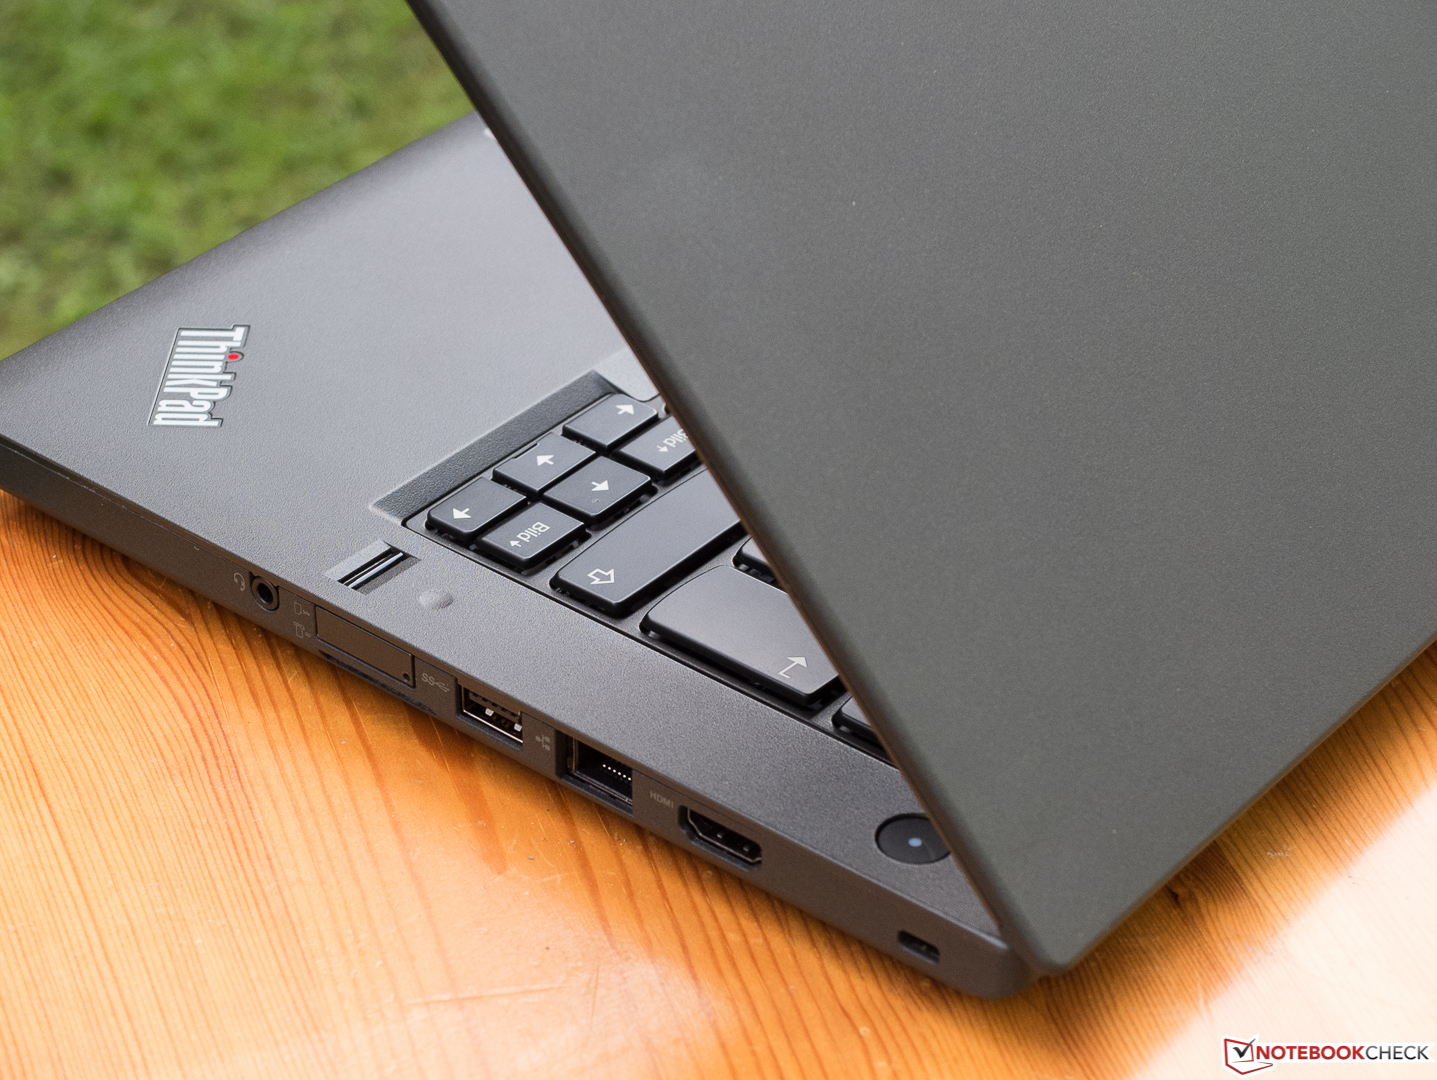 Lenovo ThinkPad T460 \u003c Core i5 \u003e